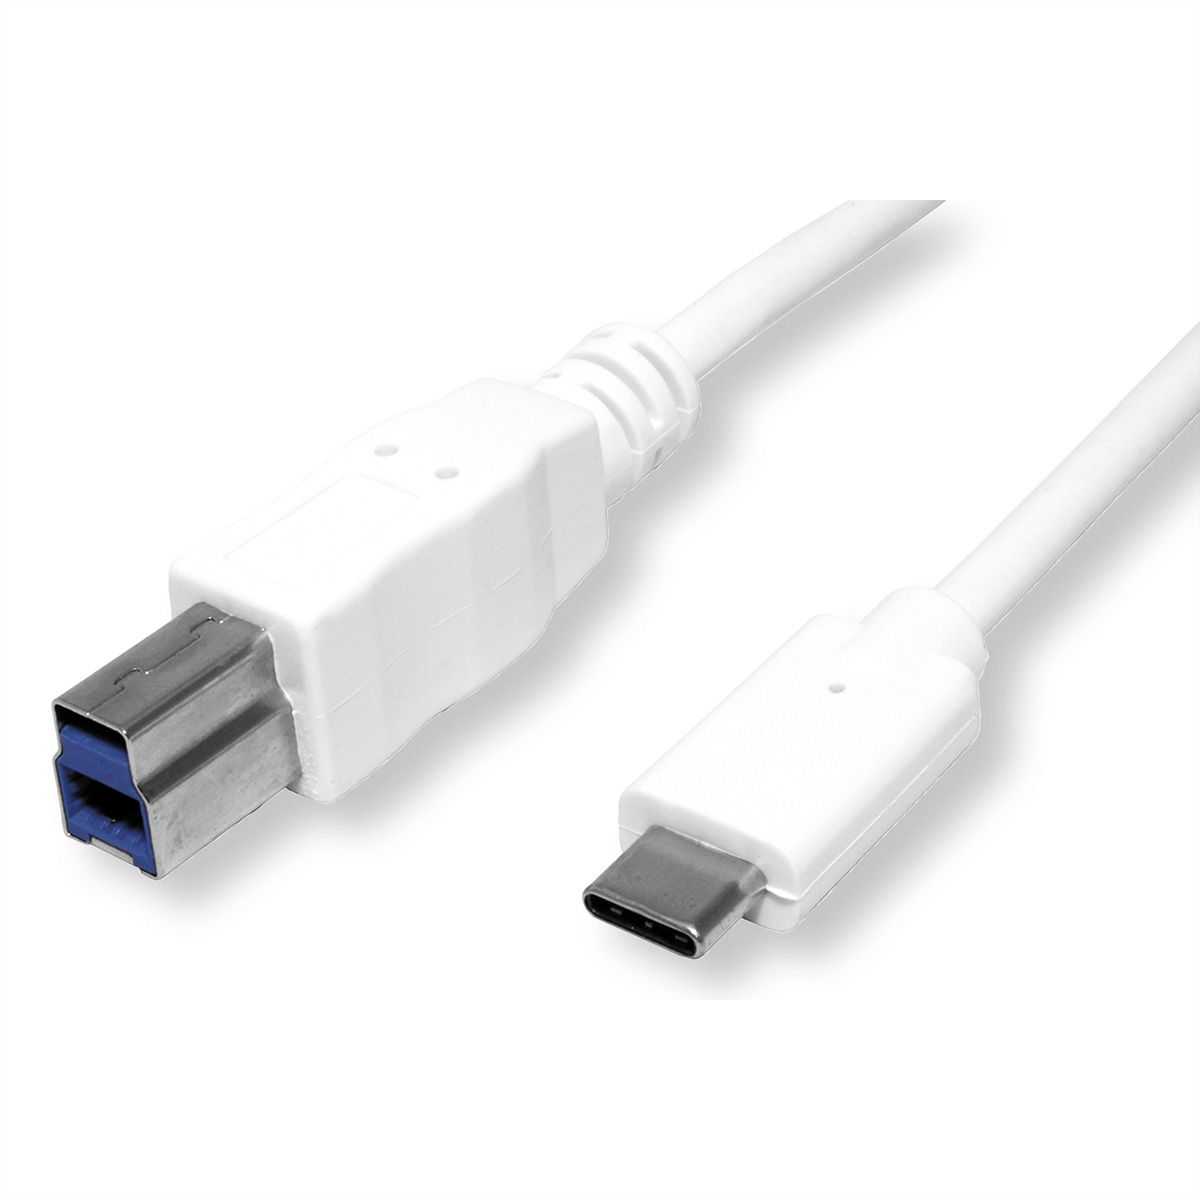 Usb c gen1. USB C 3.2 gen2x2. USB3.2 gen1 Cable. USB 3.2 gen2/DISPLAYPORT. Кабель USB 3.2 gen2x2 Type-c.